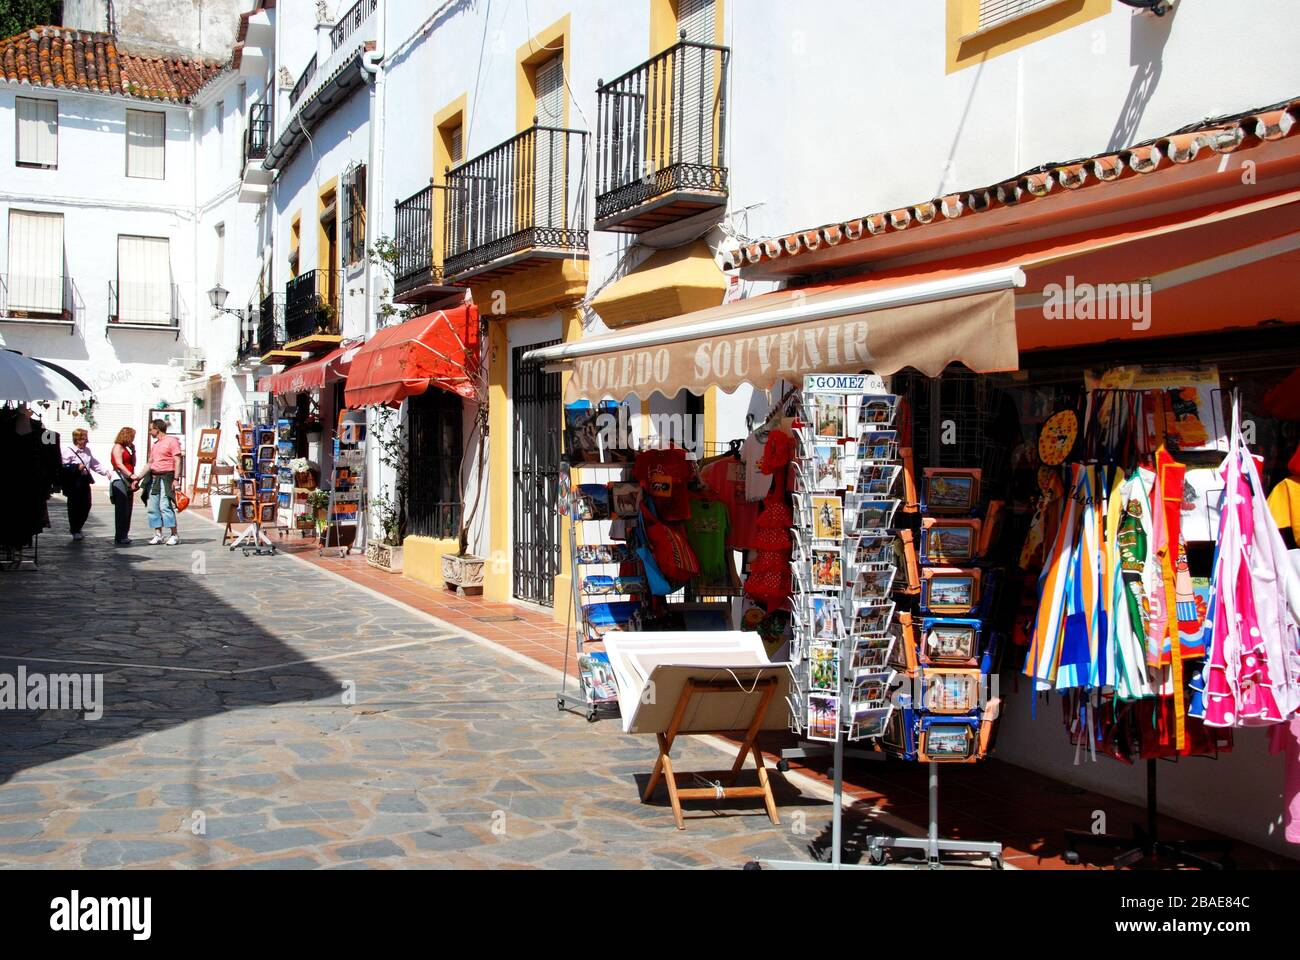 Boutiques touristiques dans la vieille ville, Marbella, Espagne. Banque D'Images